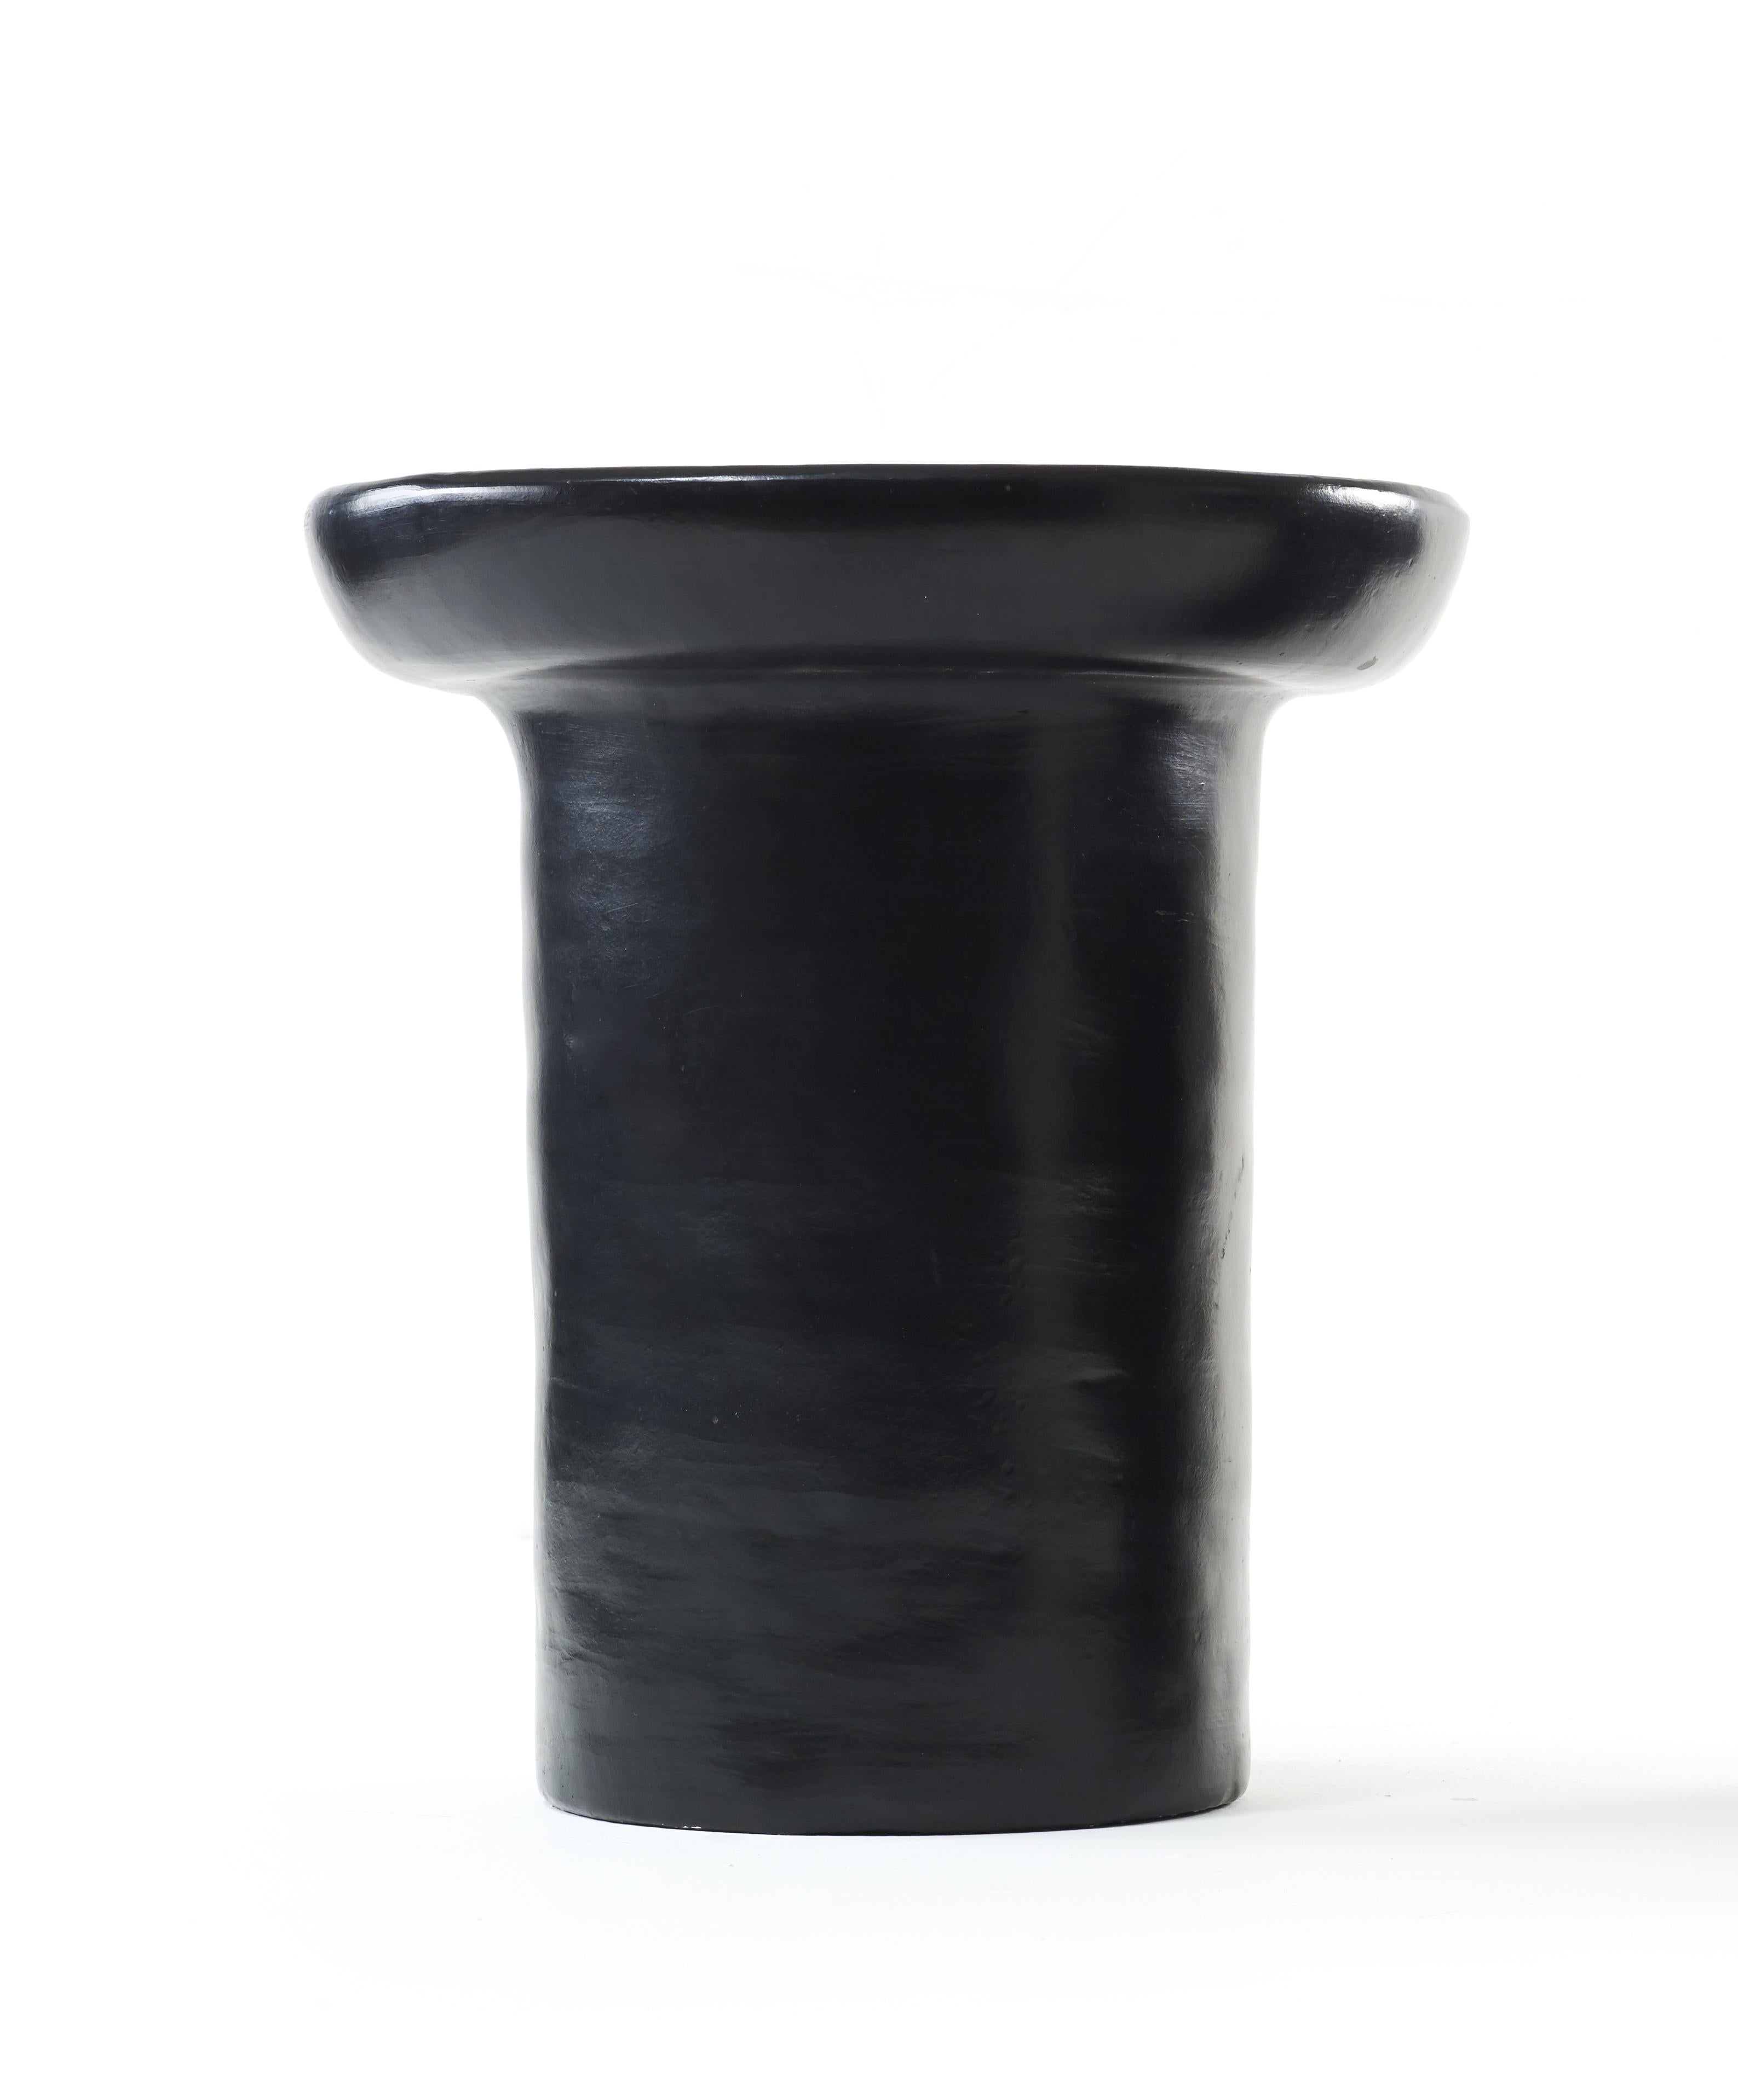 Schwarzer großer nuna beistelltisch von Sebastian Herkner
MATERIALIEN: Hitzebeständige schwarze und rote Keramik. 
Technik: Glasiert. Im Ofen gegart und mit Halbedelsteinen poliert.
Abmessungen: Durchmesser 33 cm x Höhe 40 cm 
Erhältlich in den